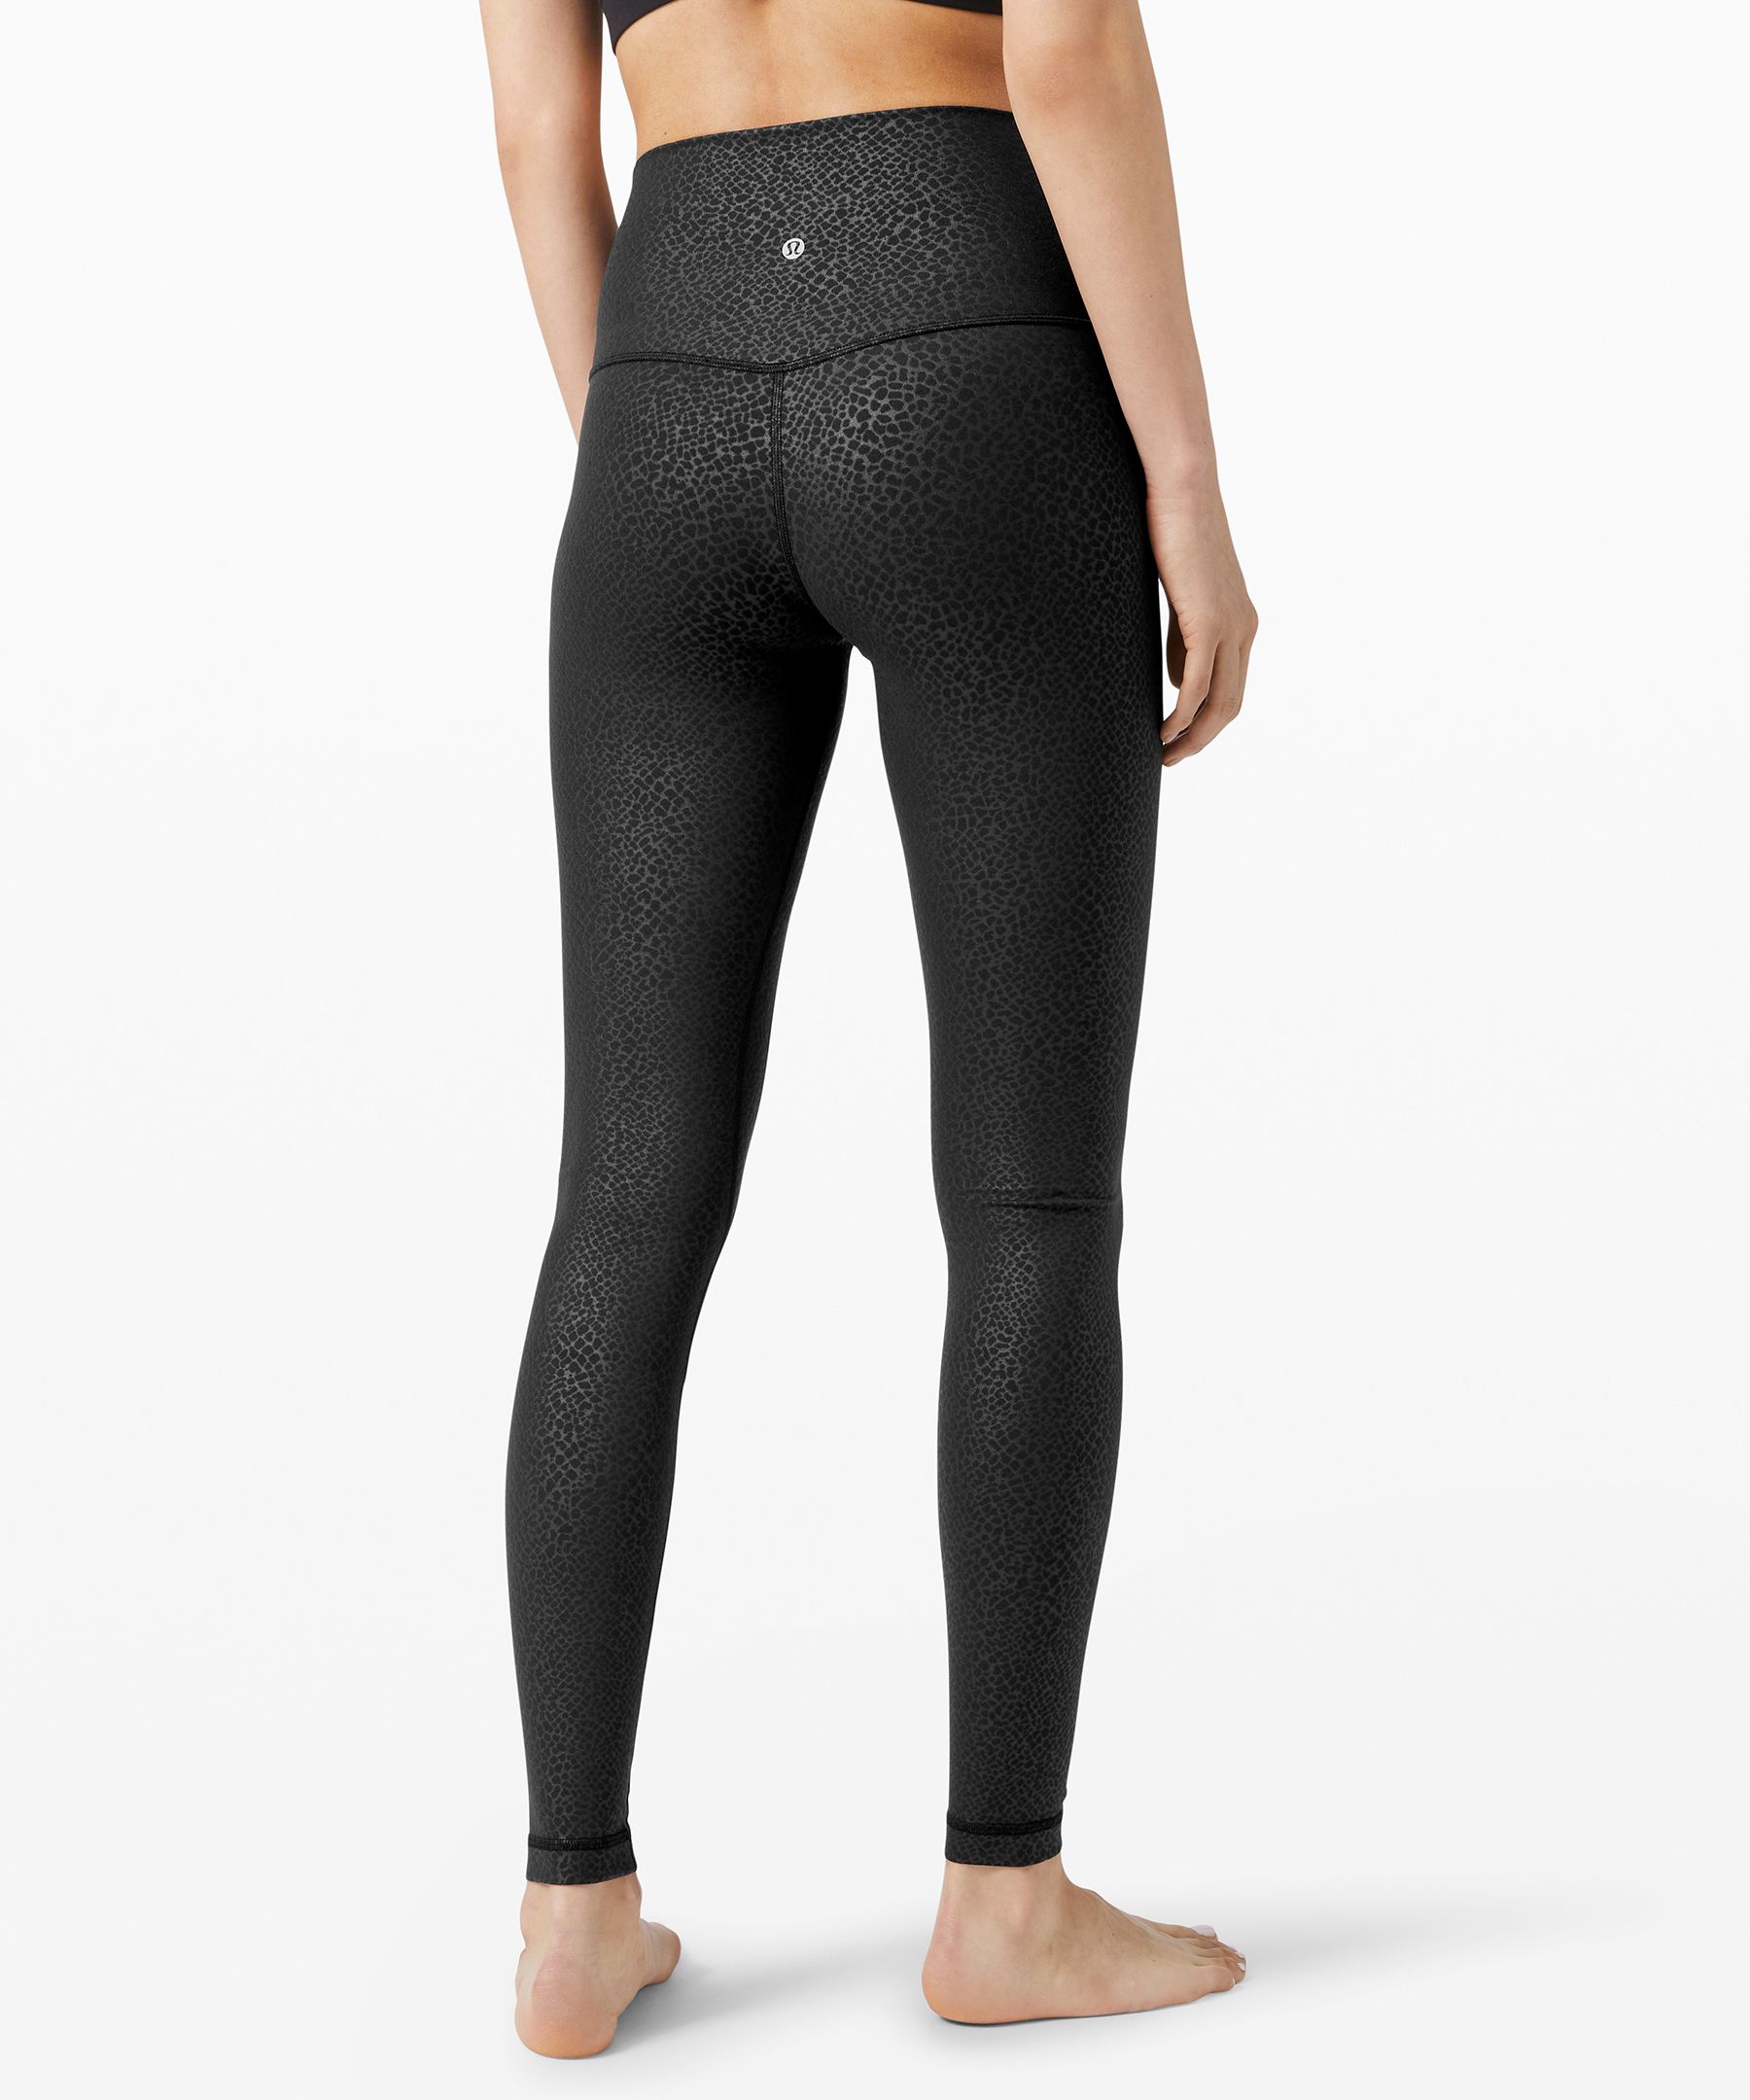 Buy Lululemon Align Full Length Yoga Pants - High-Waisted Design